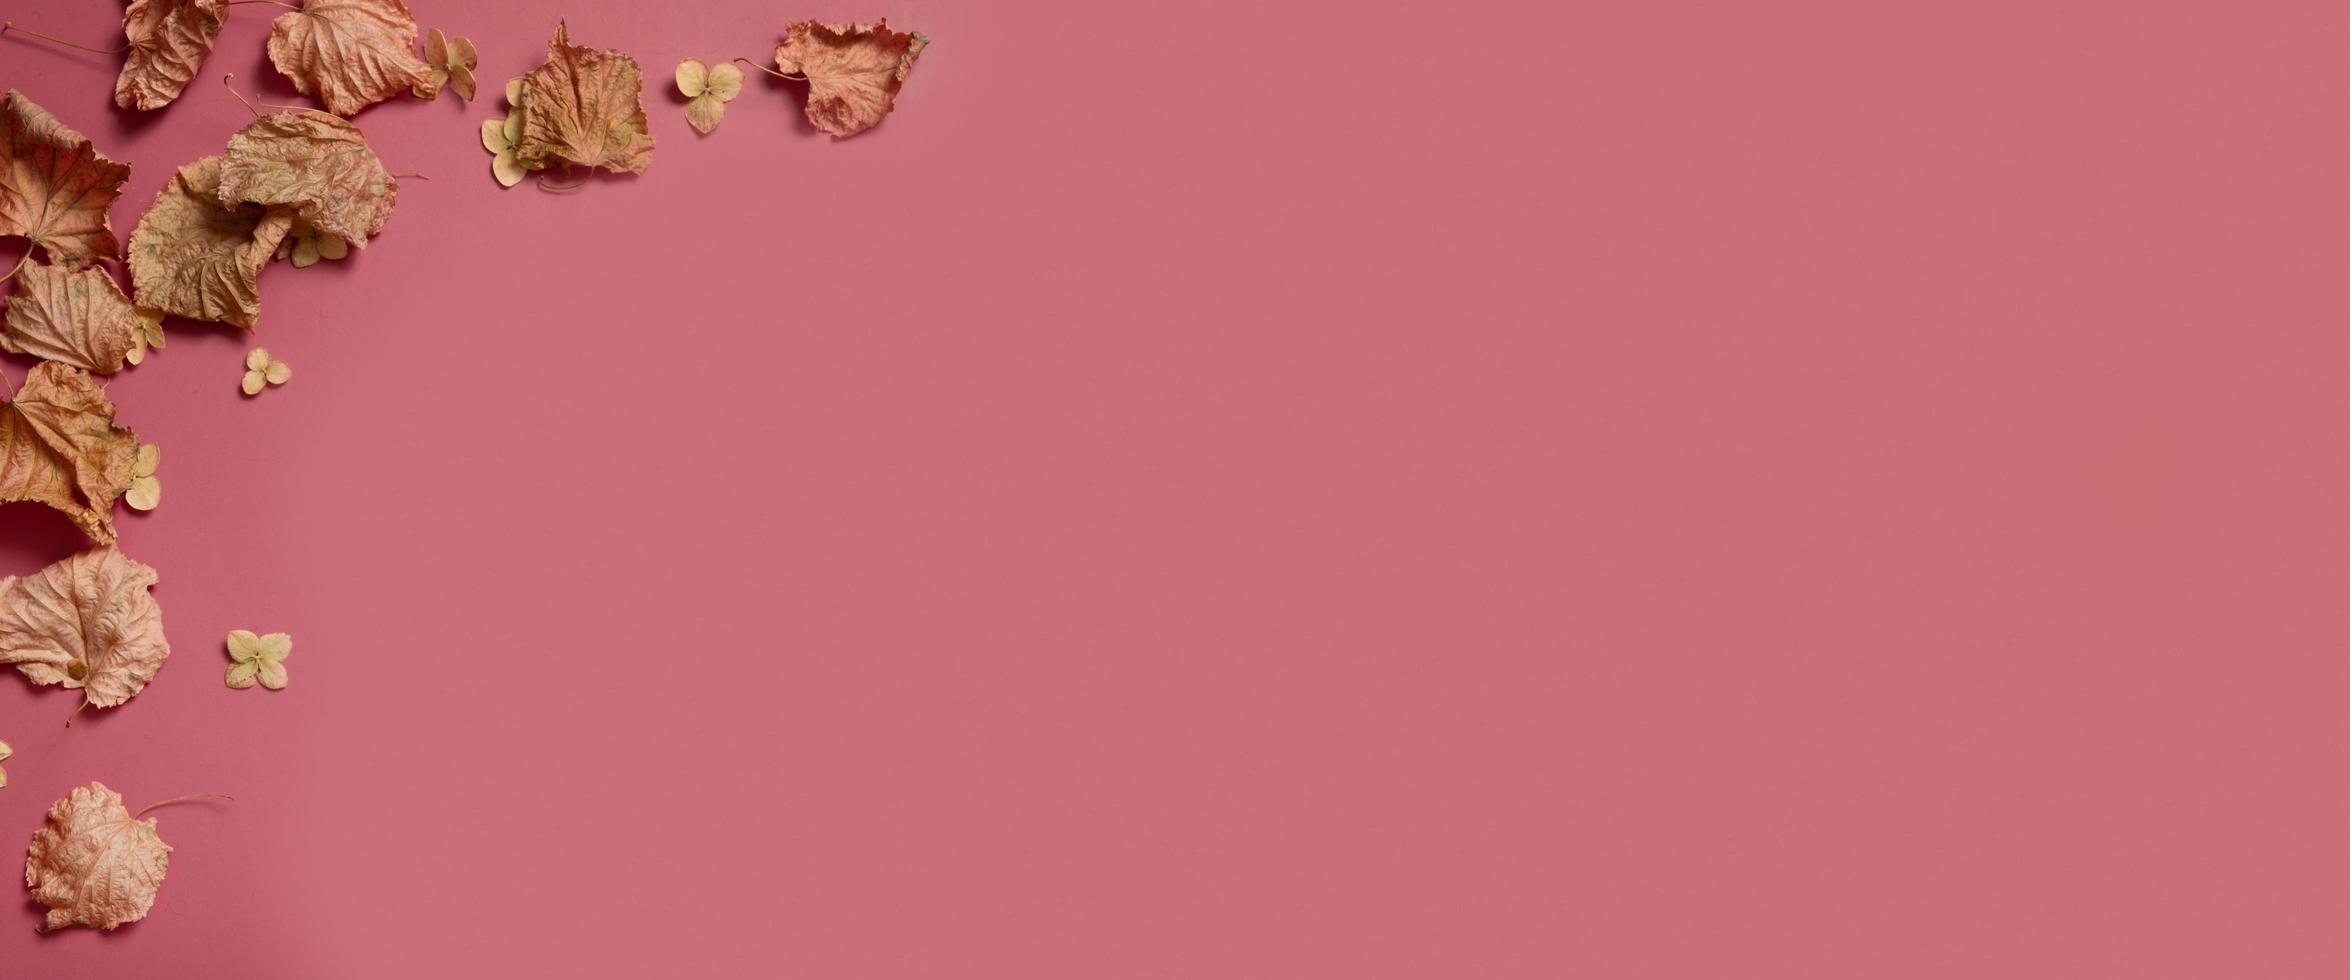 hojas de otoño doradas de diferentes formas sobre fondo rosa. concepto de otoño, fondo de otoño. diseño floral mínimo, marco de hoja de otoño con espacio de copia. composición creativa de otoño. bandera foto